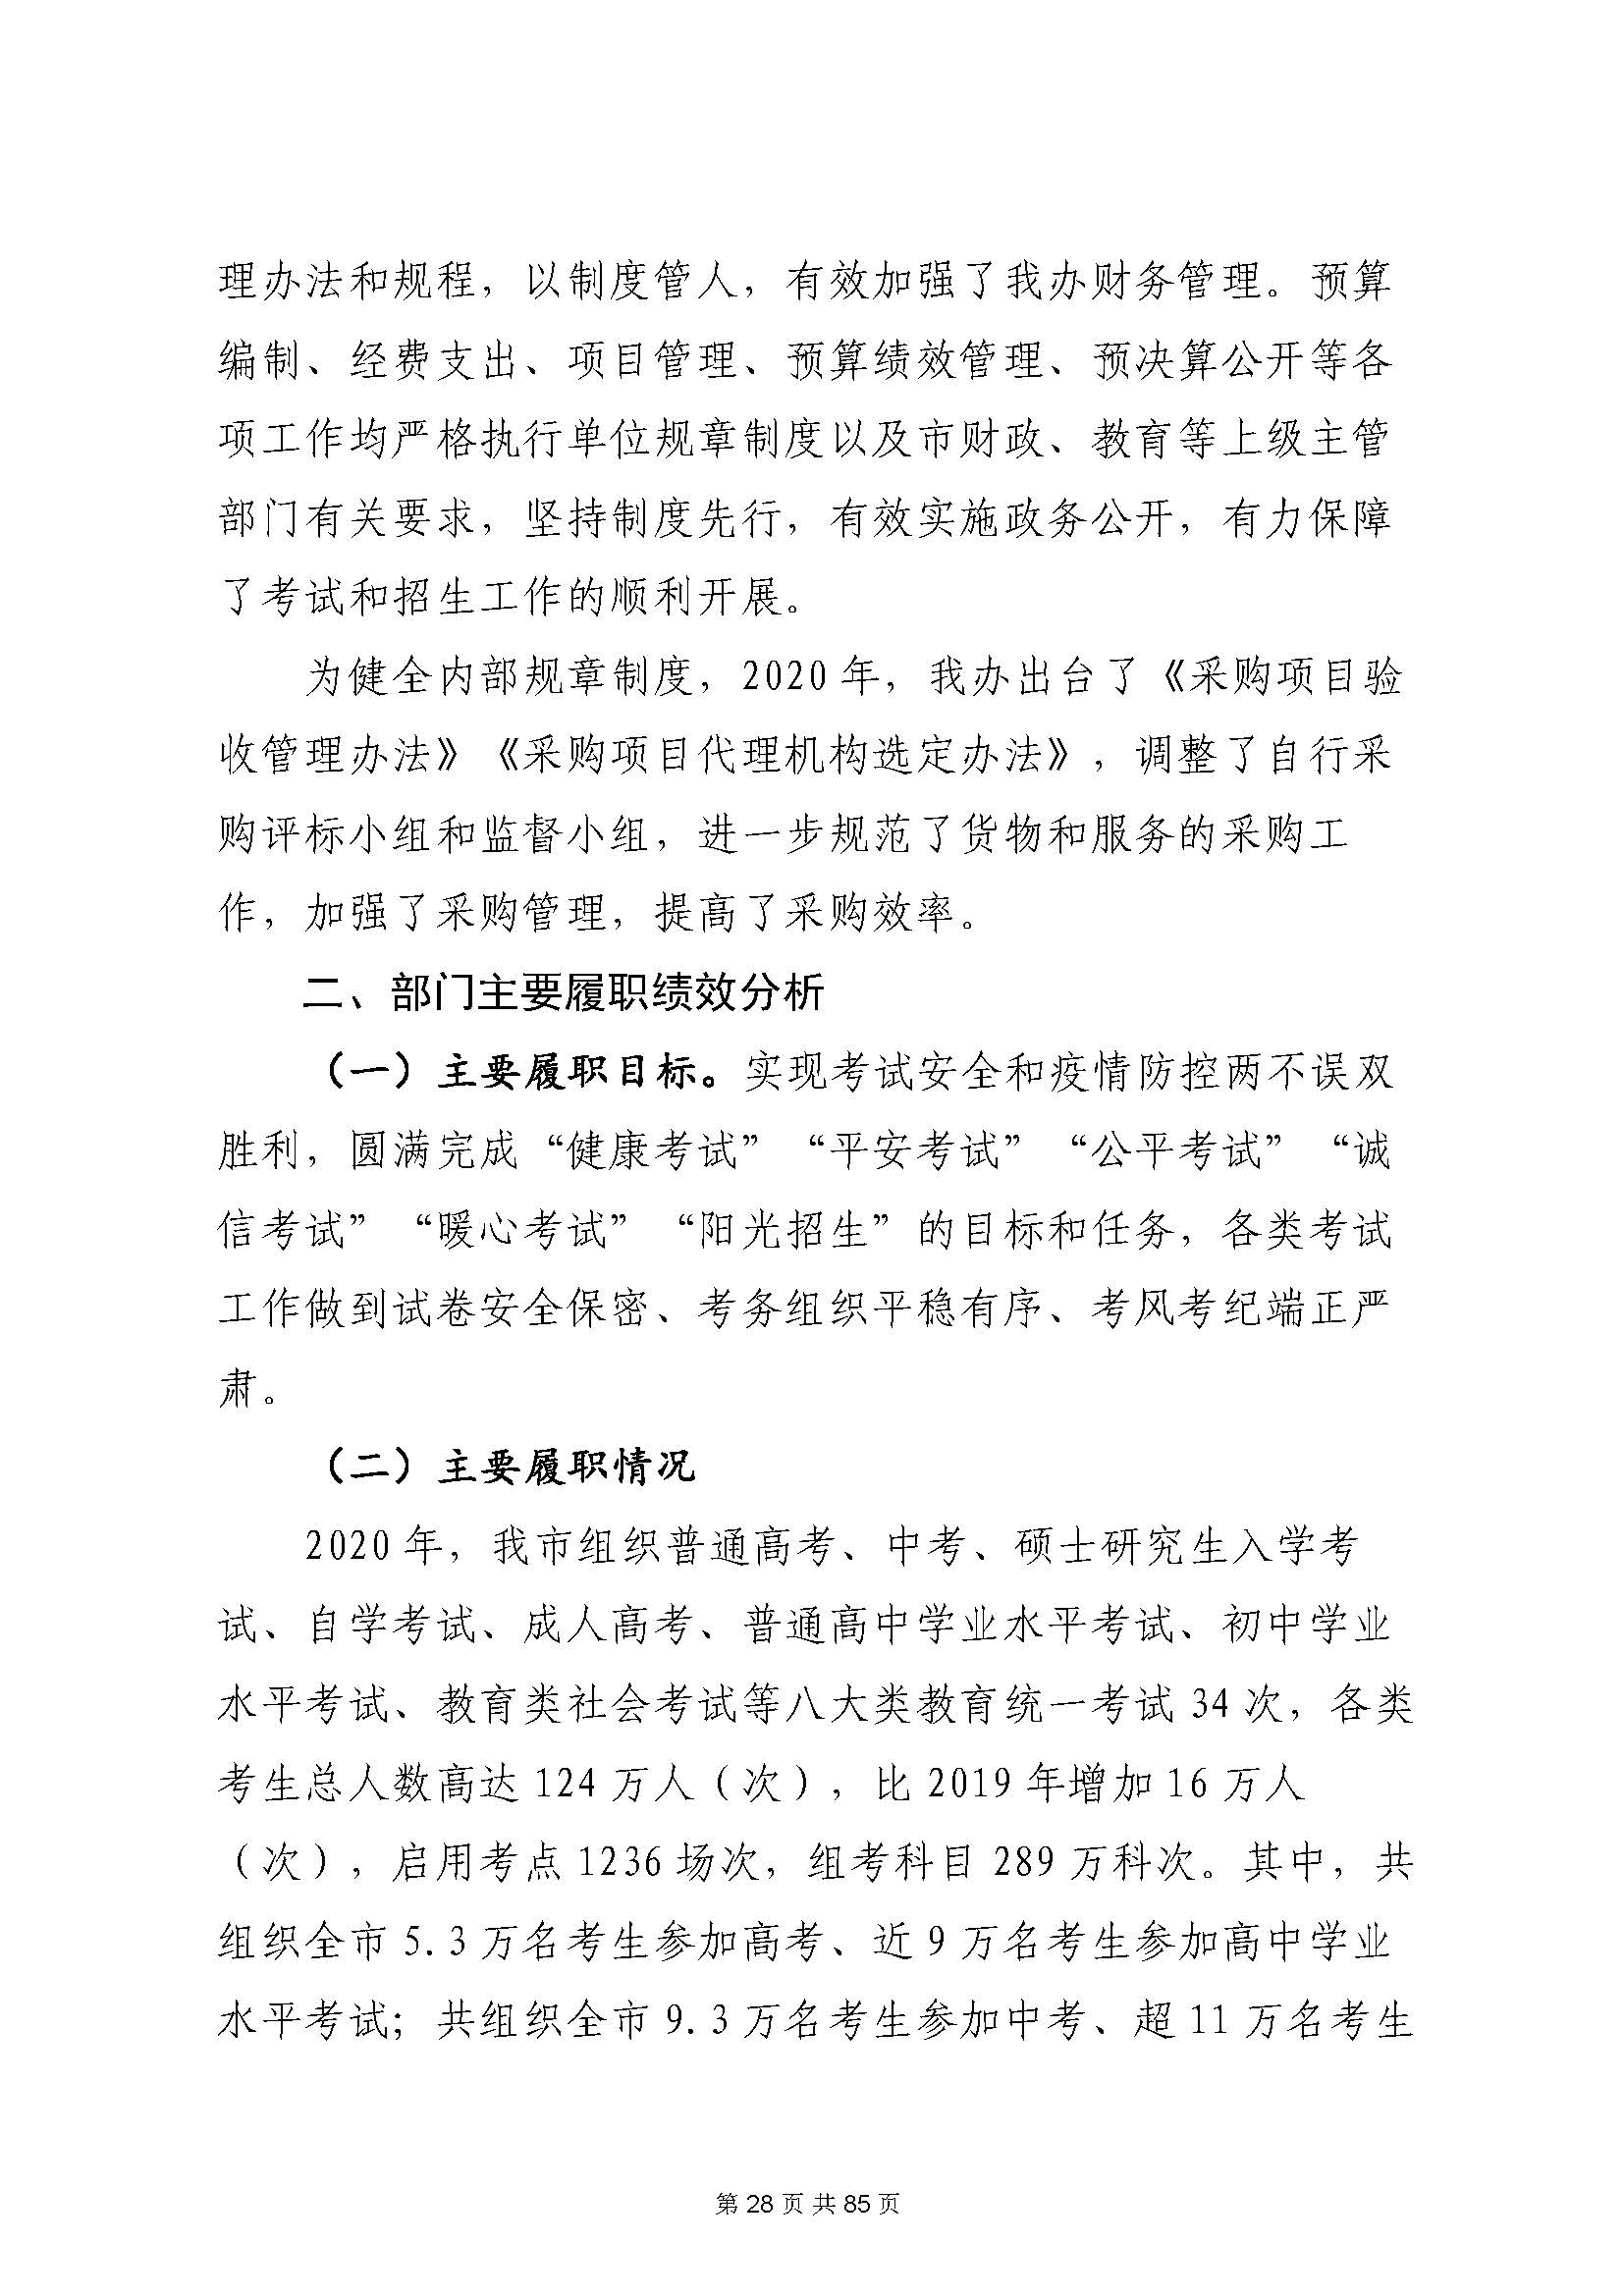 深圳市招生考试办公室2020年度部门决算_页面_29.jpg